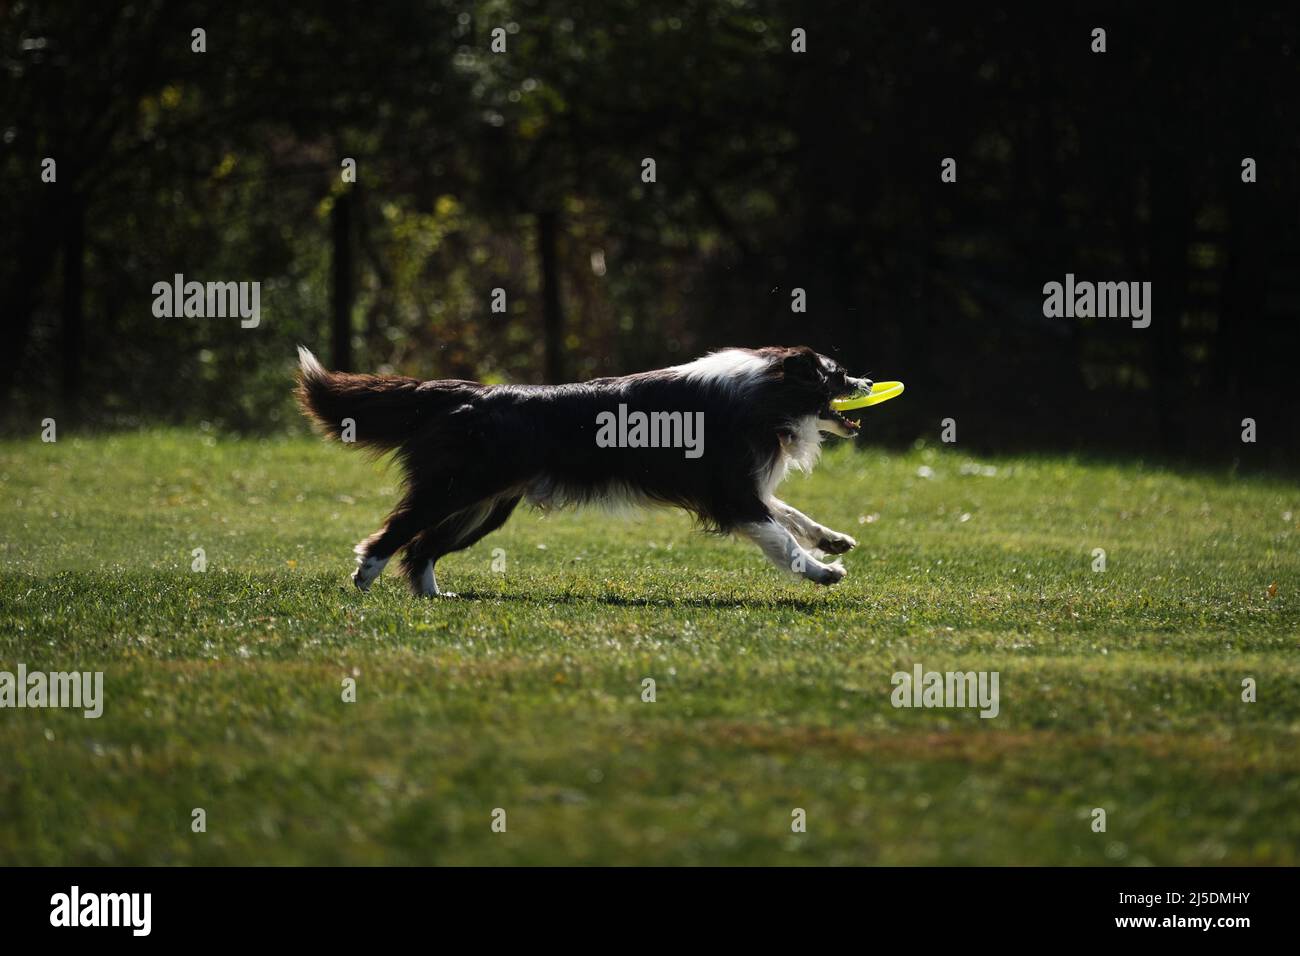 Hundefrisbee. Border Collie schwarz und weiß läuft schnell auf dem grünen Gras fängt eine fliegende Untertasse mit Zähnen. Wettbewerbe von getragenden Hunden. Stockfoto